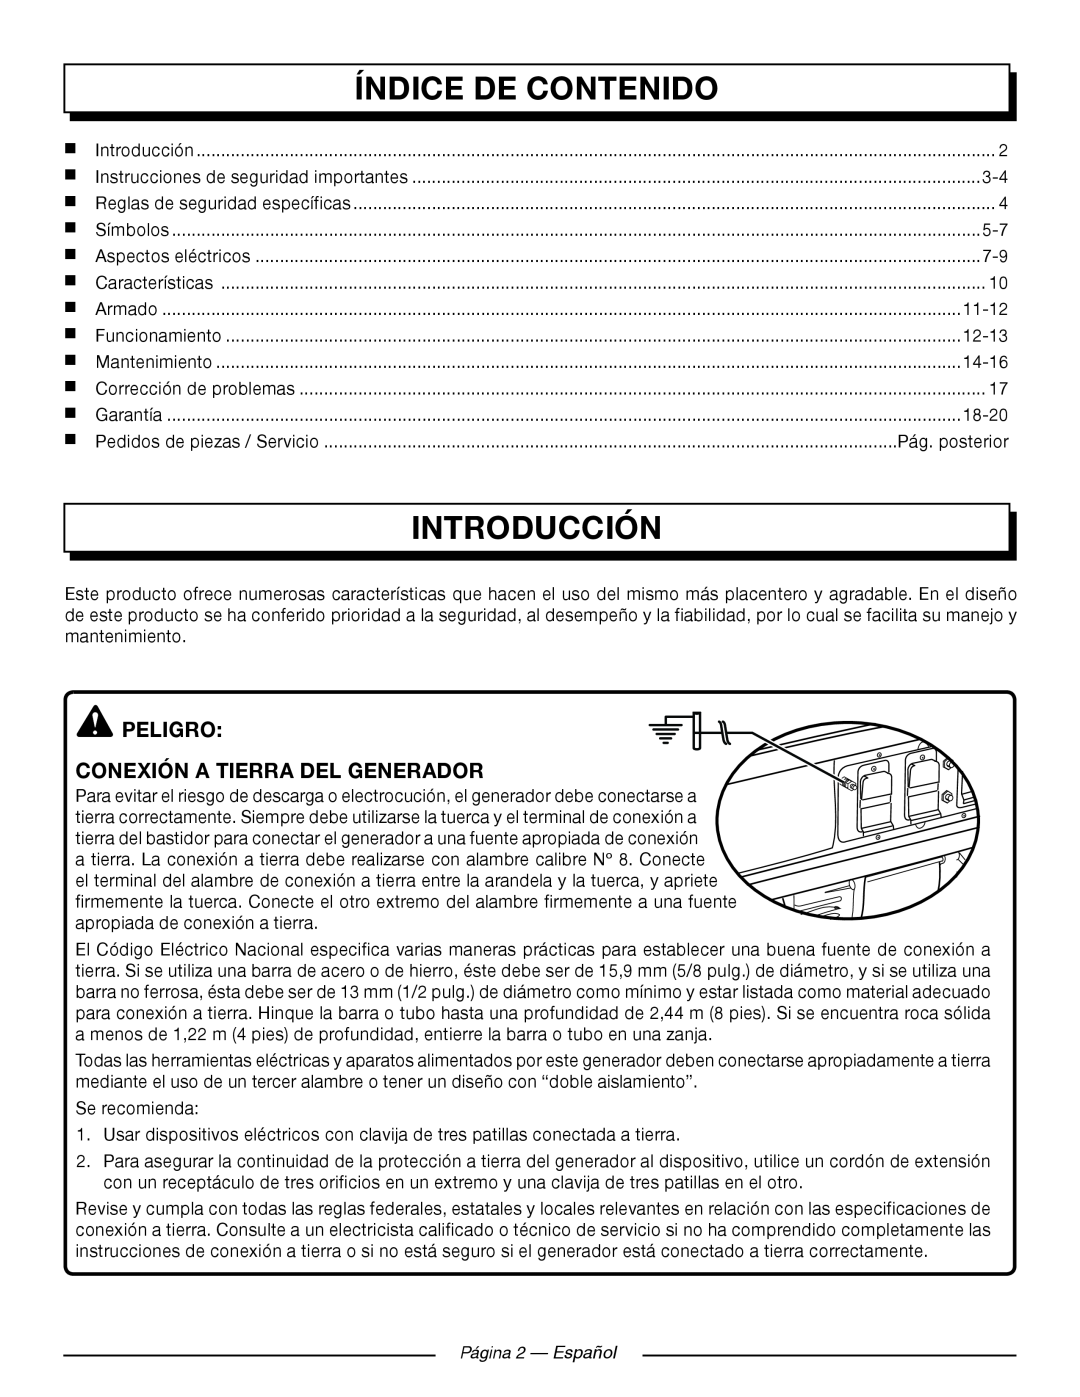 Homelite UT905011 Índice De Contenido, Introducción, Peligro Conexión A Tierra Del Generador, Pág. posterior, 11-12, 12-13 